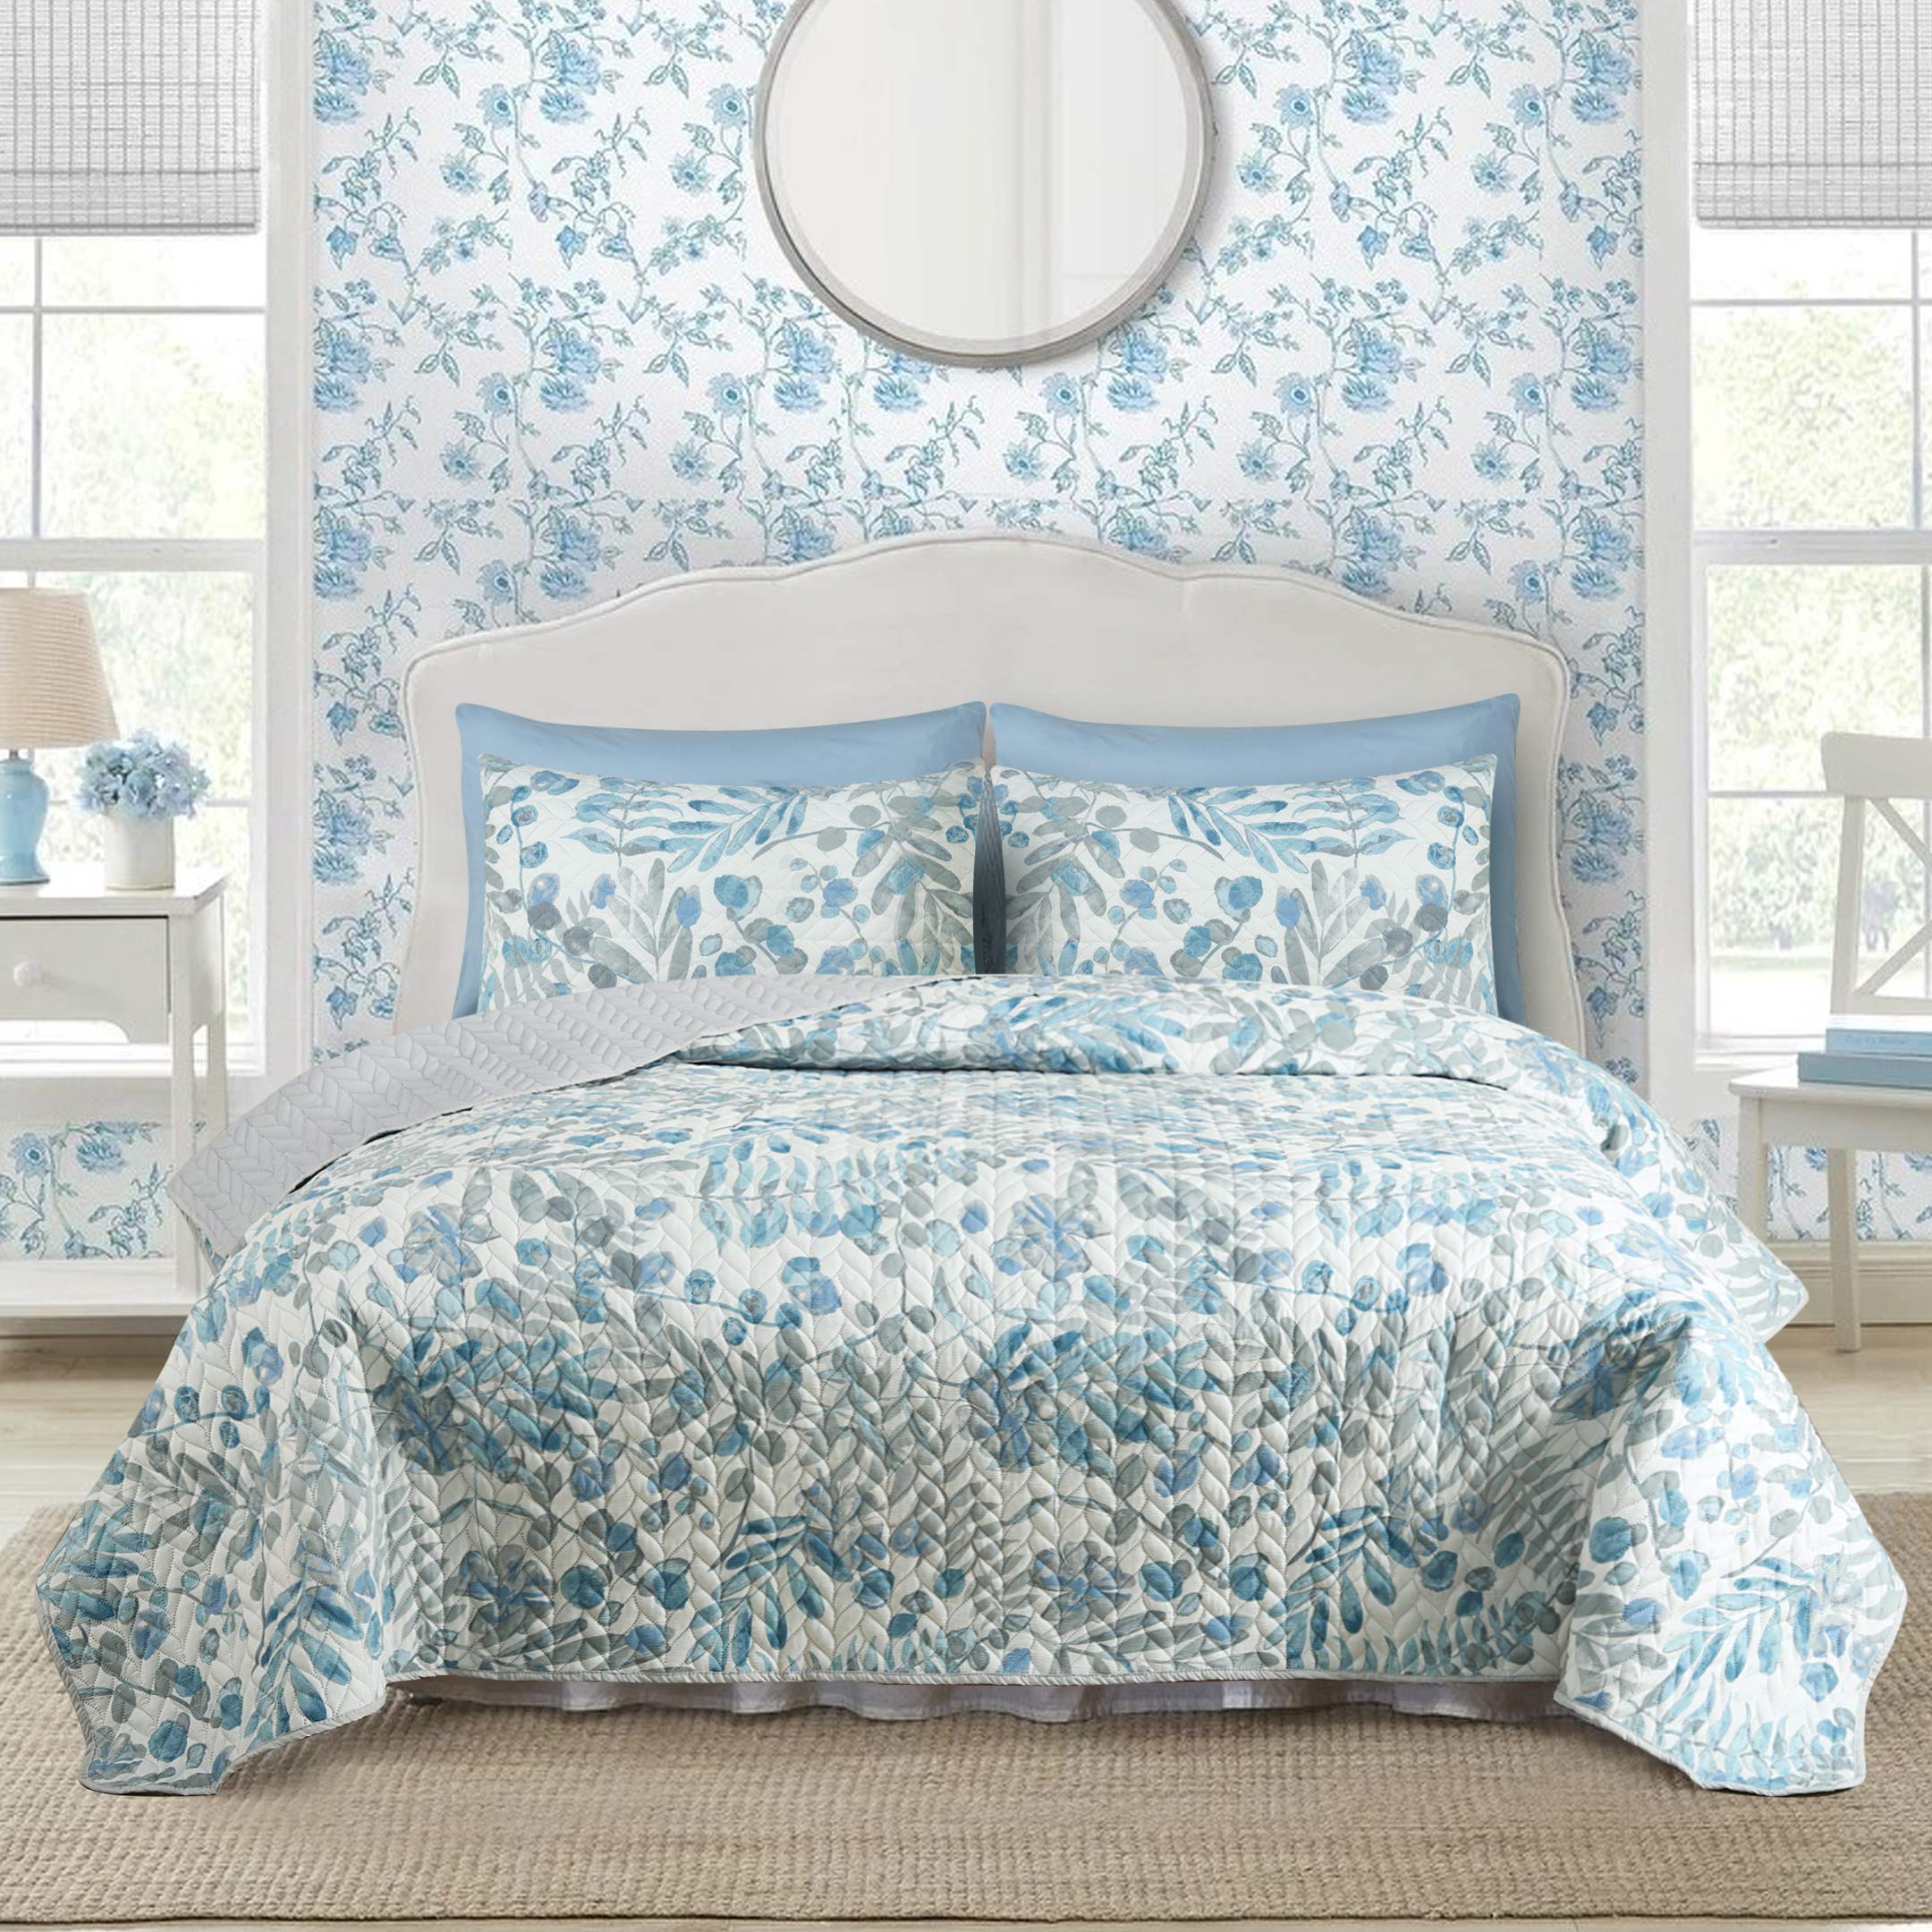 Watercolor Floral Stems Bedspread 6 pcs Set